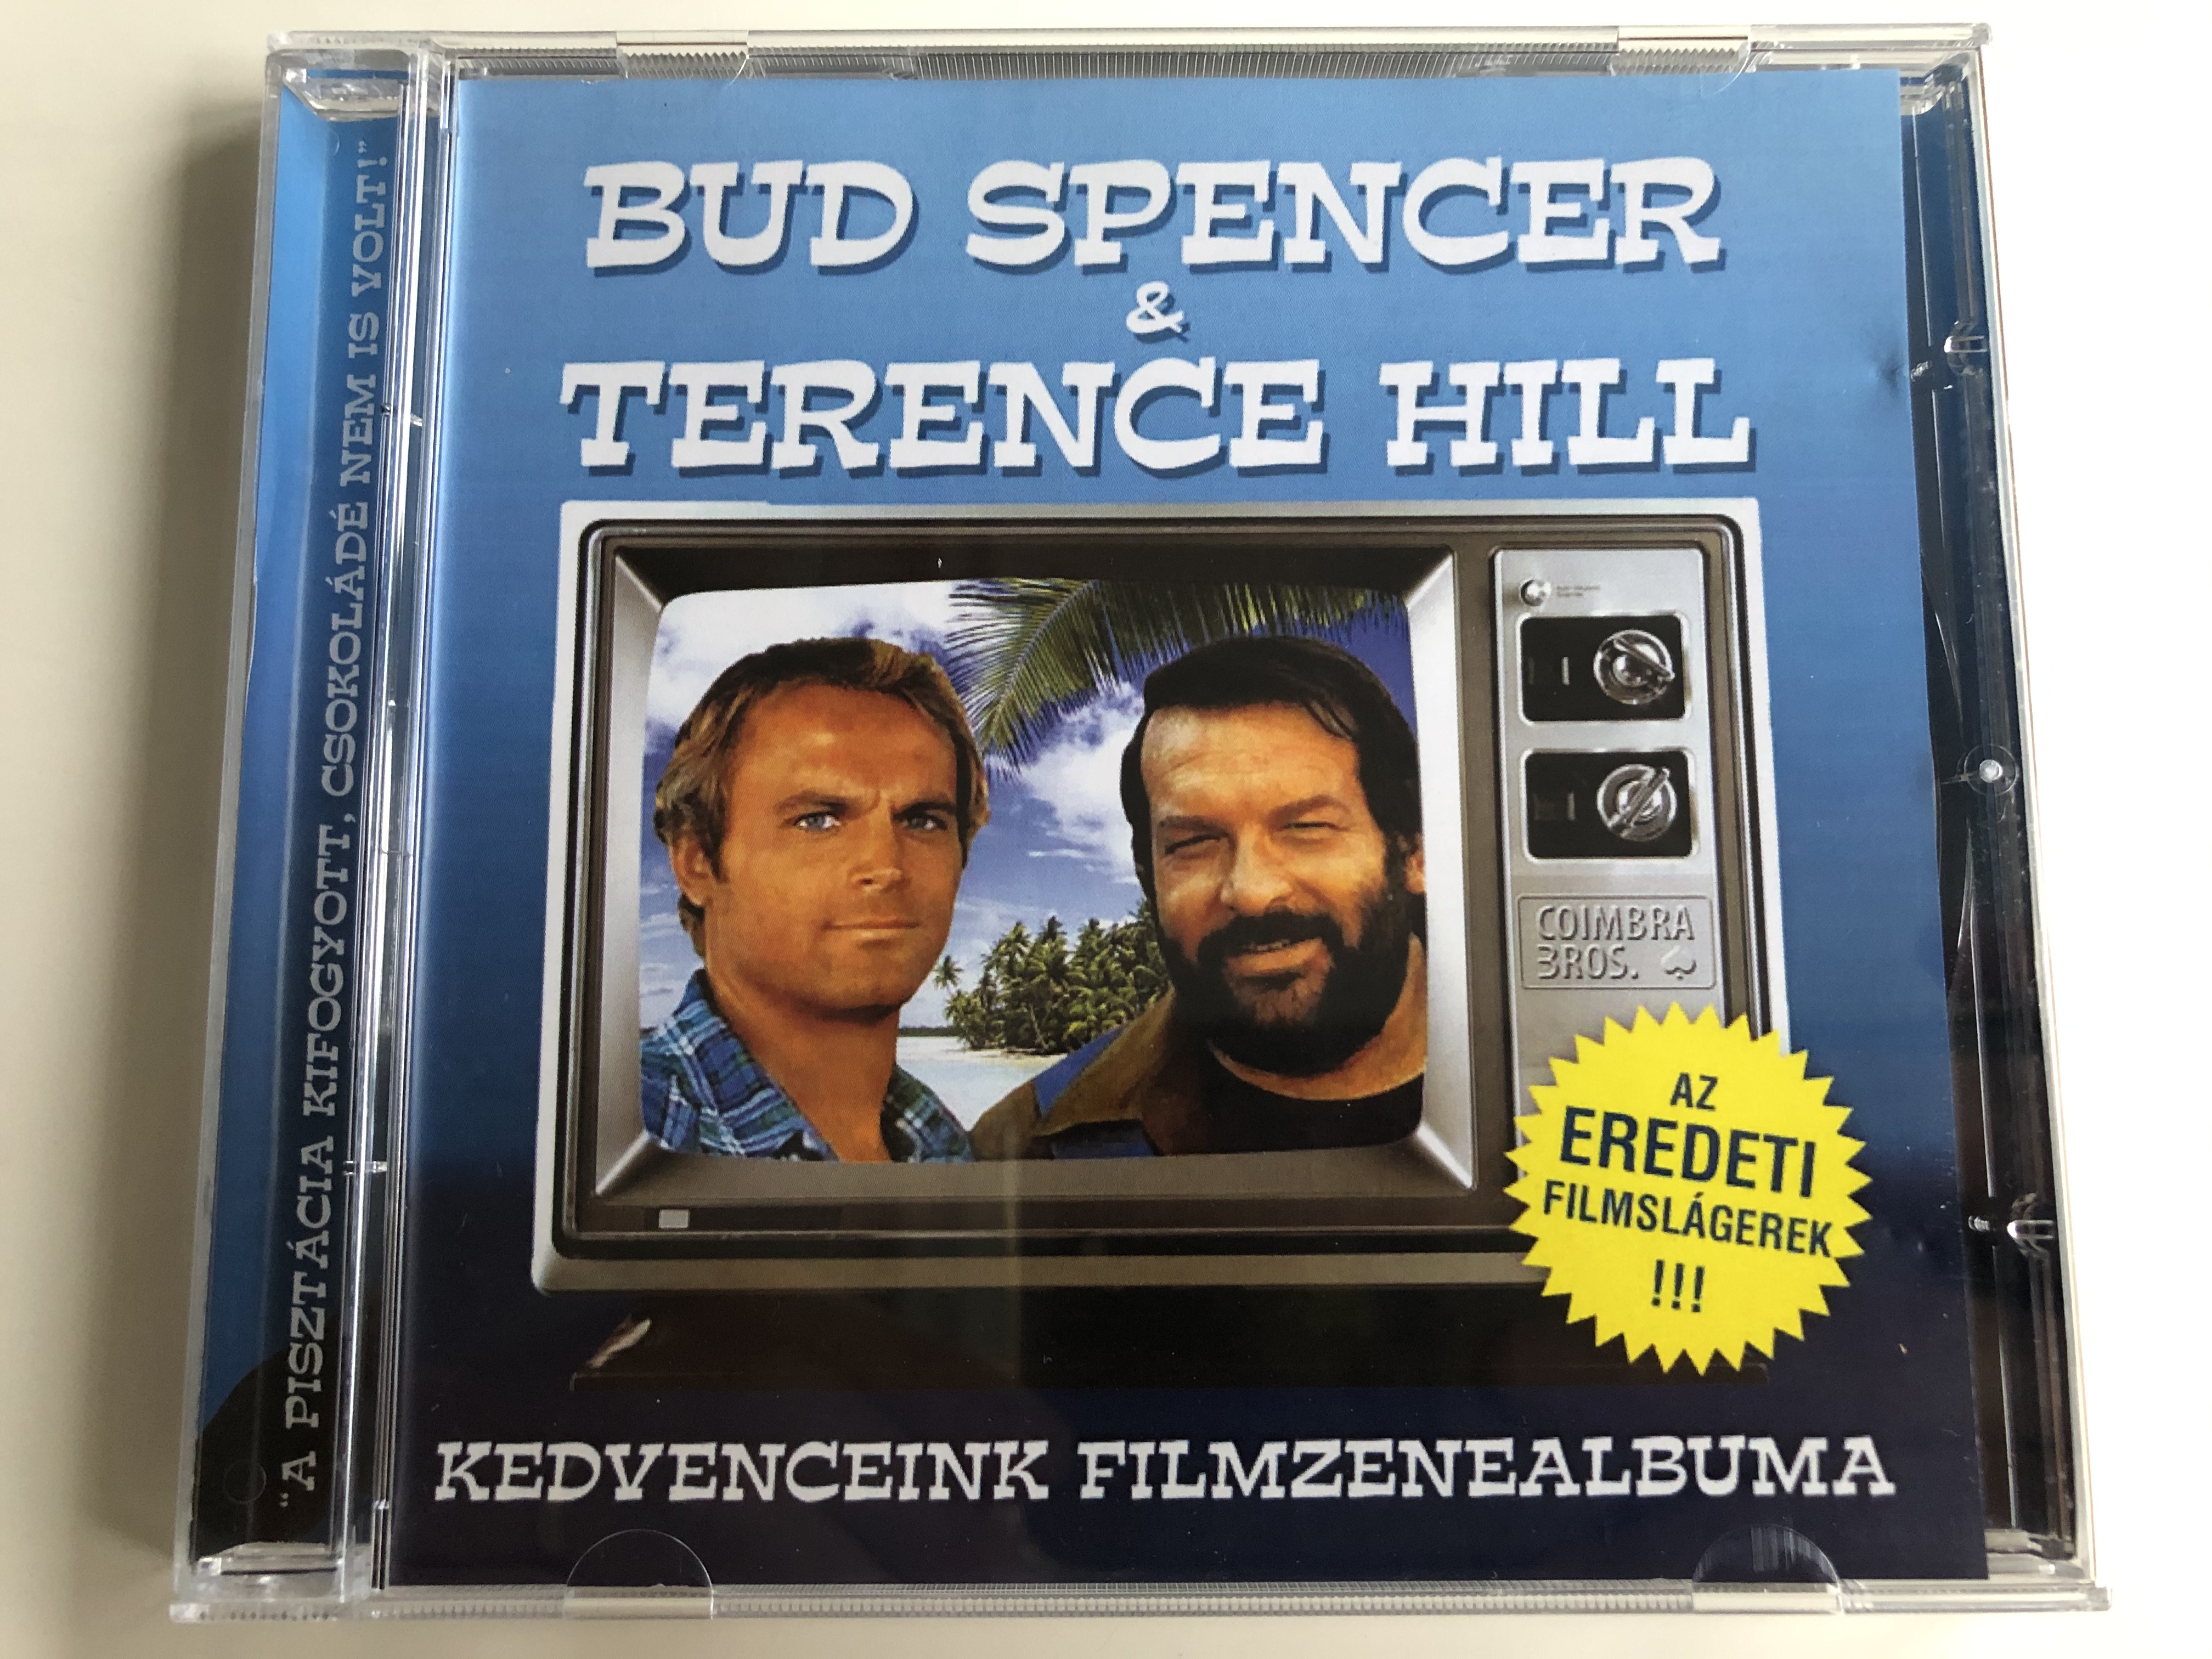 bud-spencer-terence-hill-kedvenceink-filmzenealbuma-az-eredeti-filmslagerek-hargent-media-audio-cd-hg-741-1-.jpg